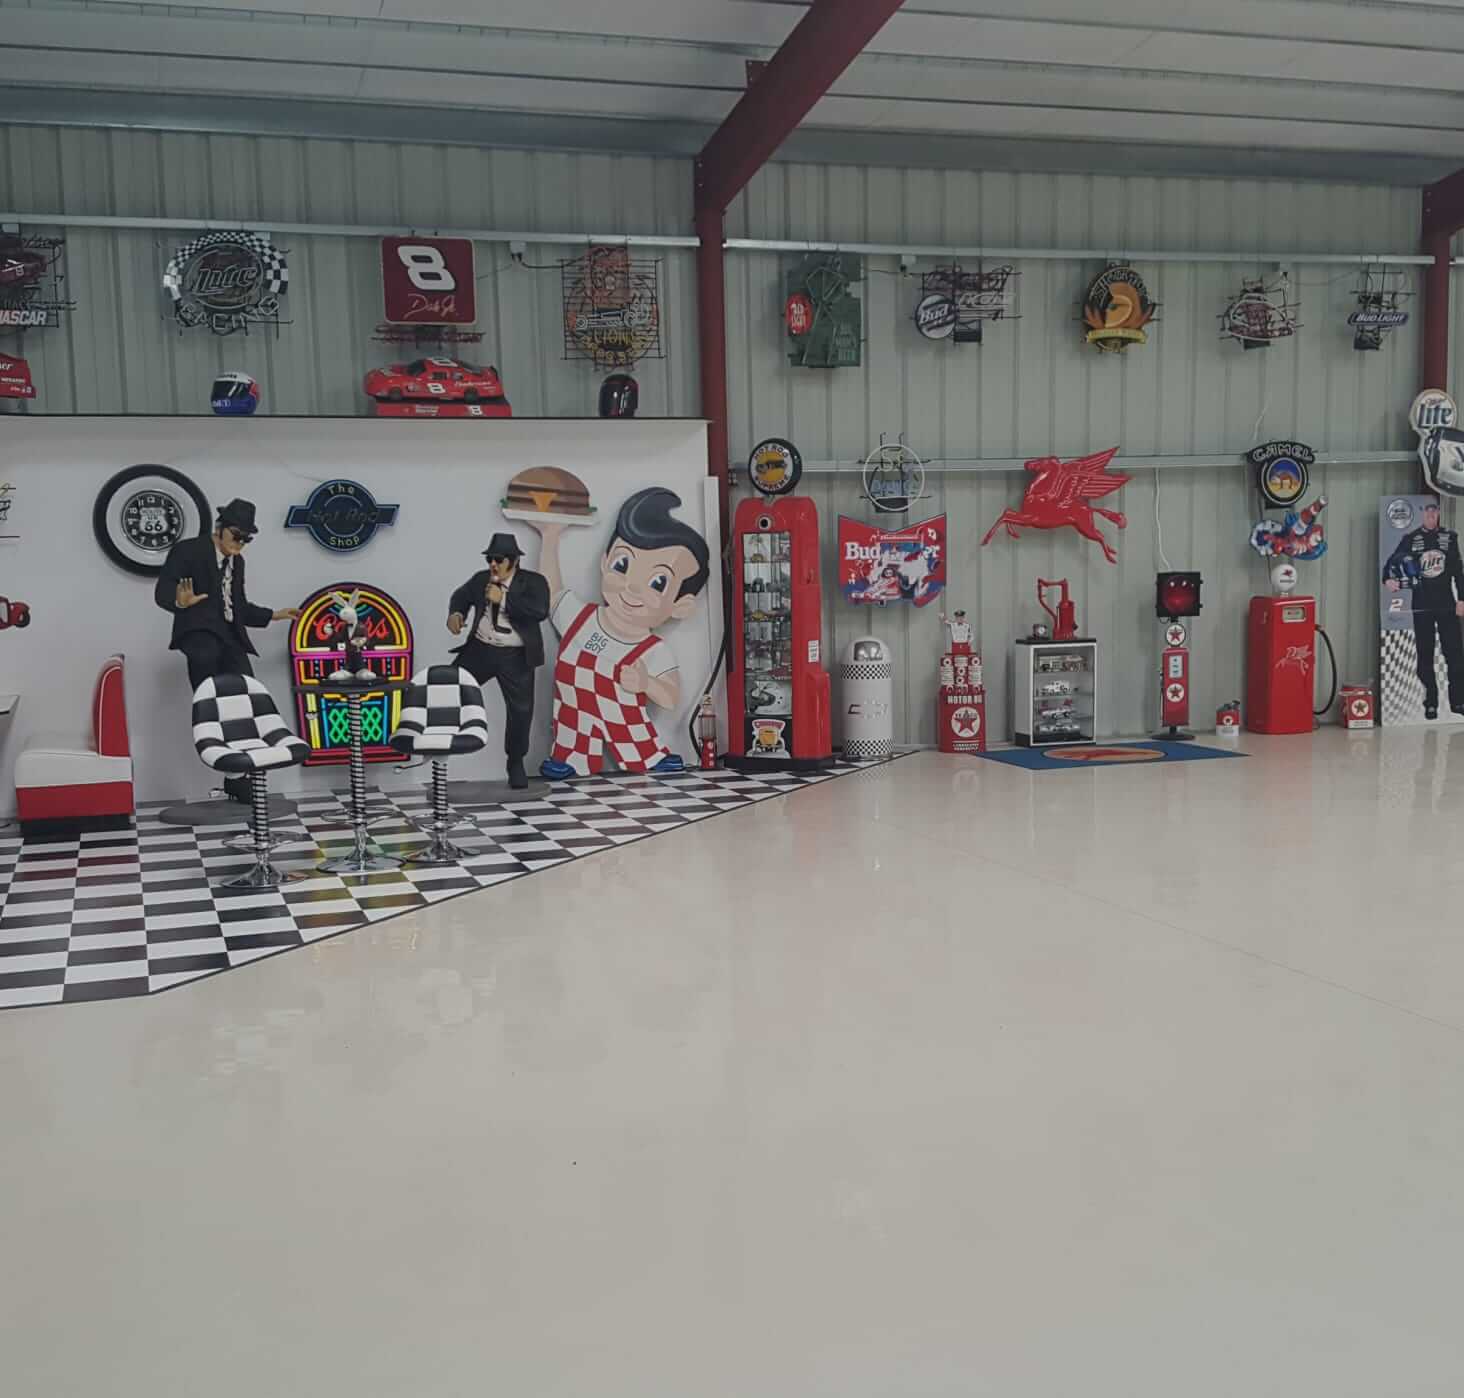 finished garage floor